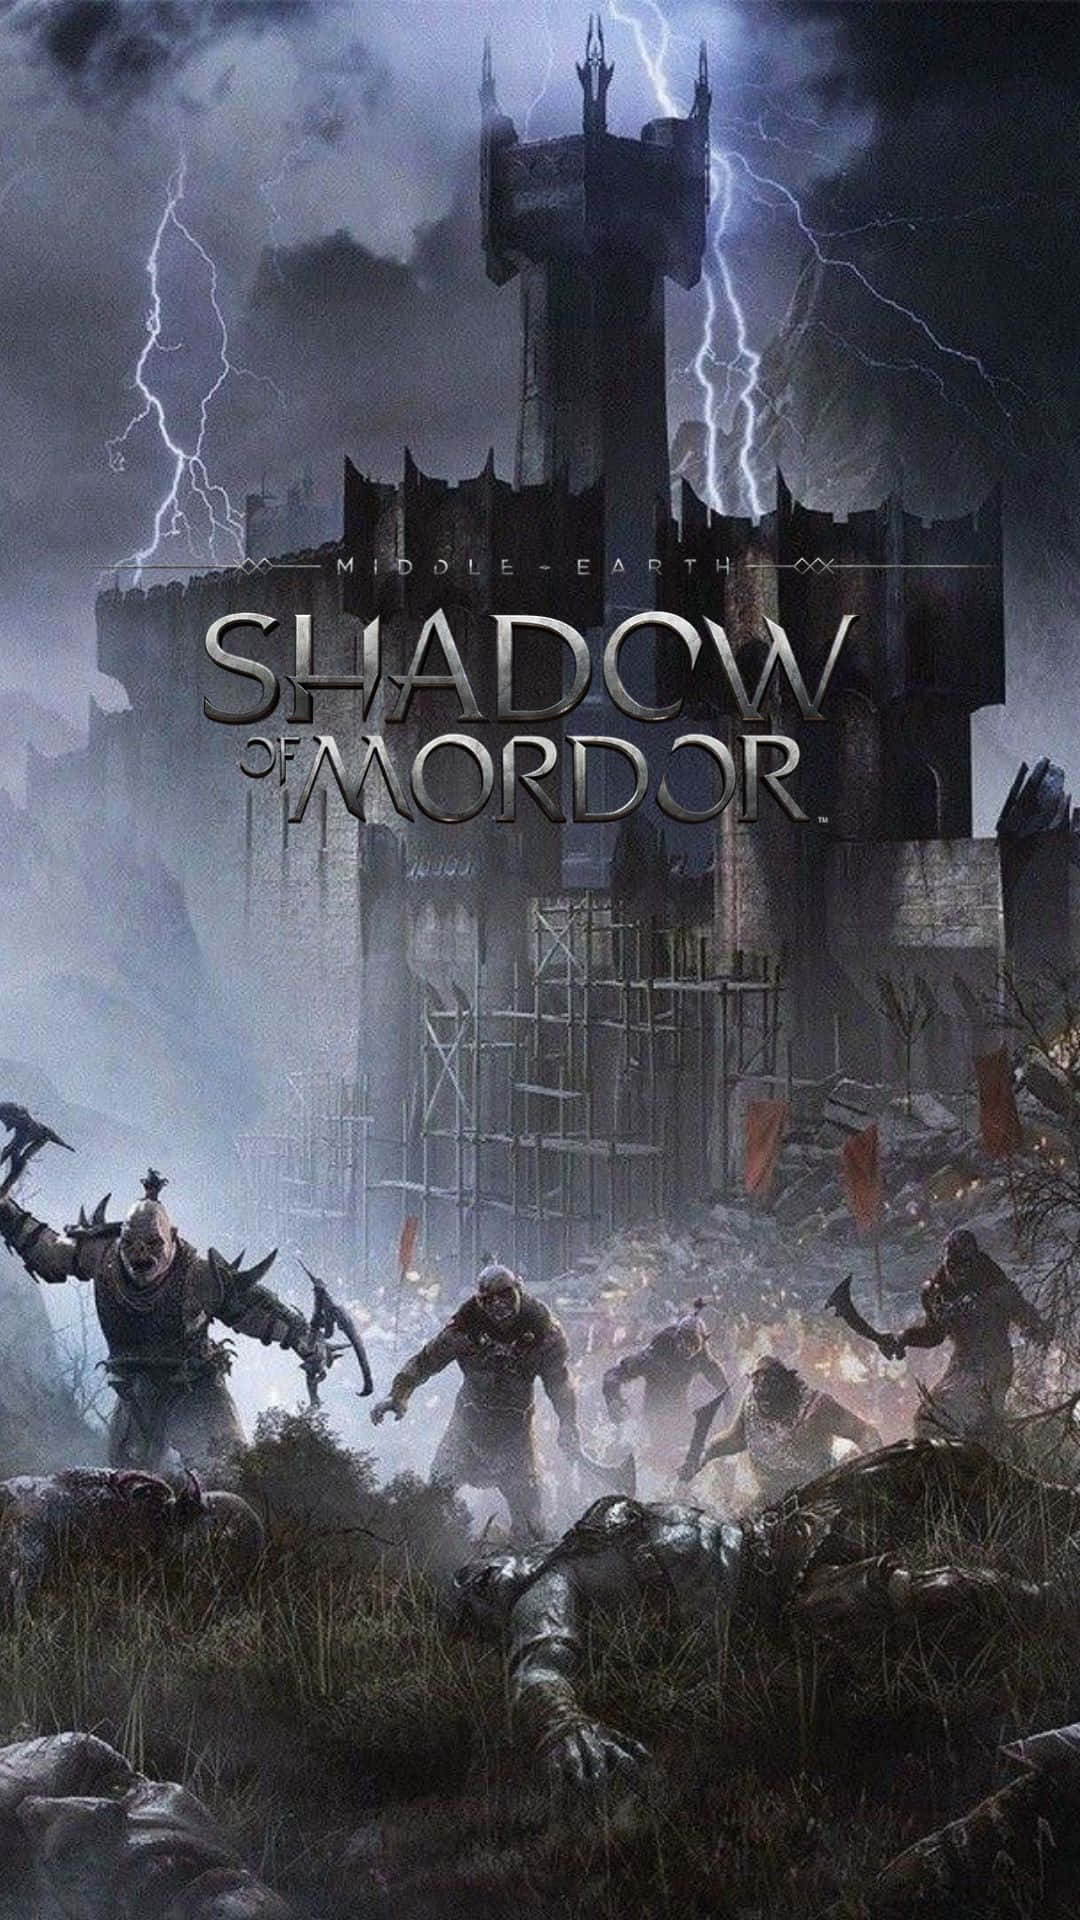 Atrévetea Vivir La Épica Historia De La Tierra Media Con Android Shadow Of Mordor.